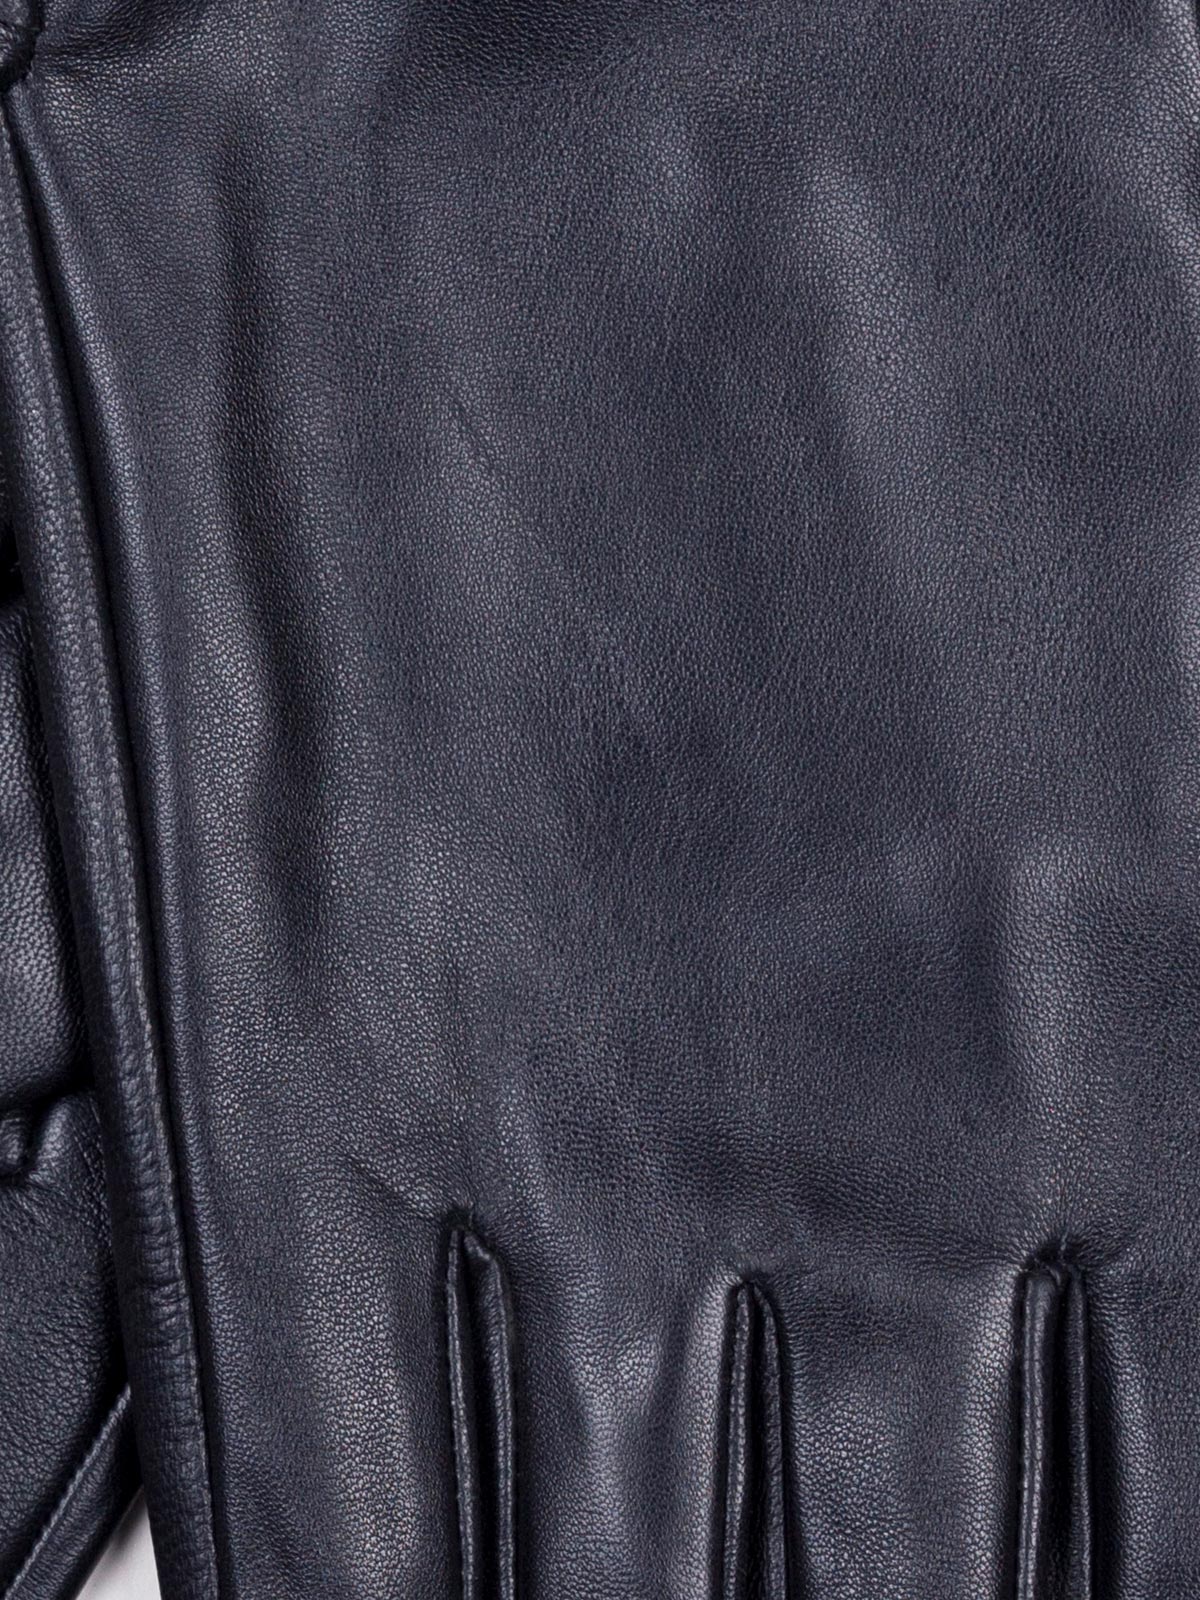  mănuși neagră din piele pură  - 10571 - € 31.50 img2